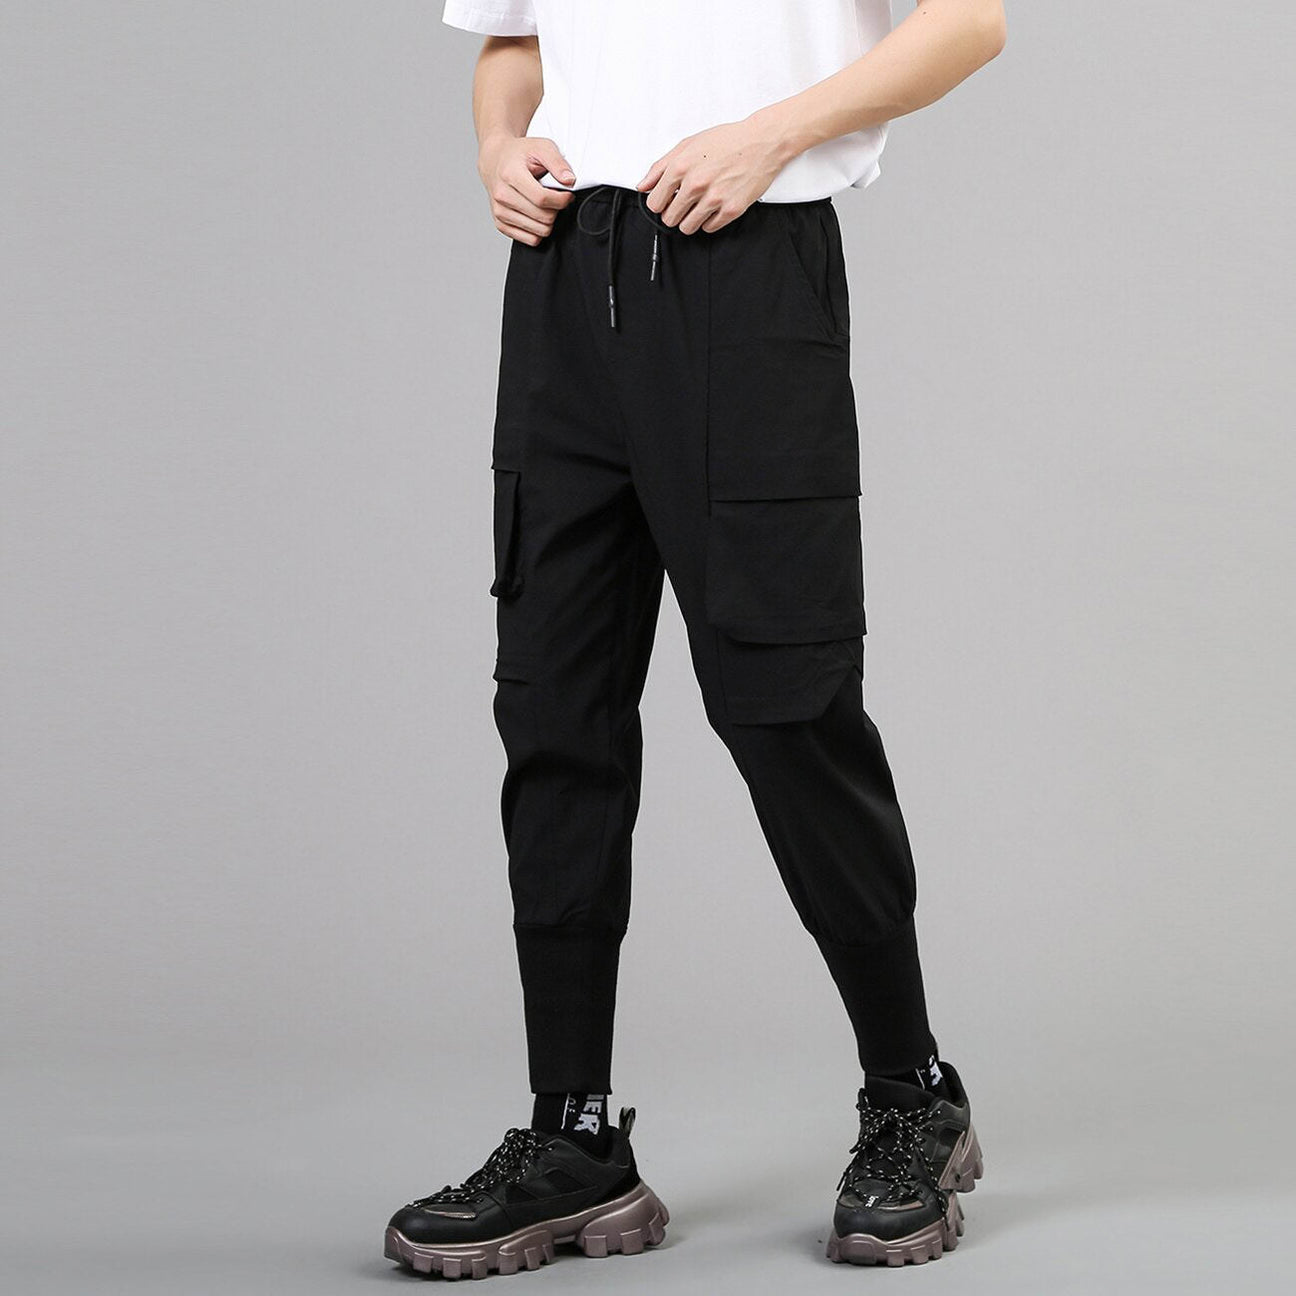 Patchwork Techwear Pants | CYBER TECHWEAR®